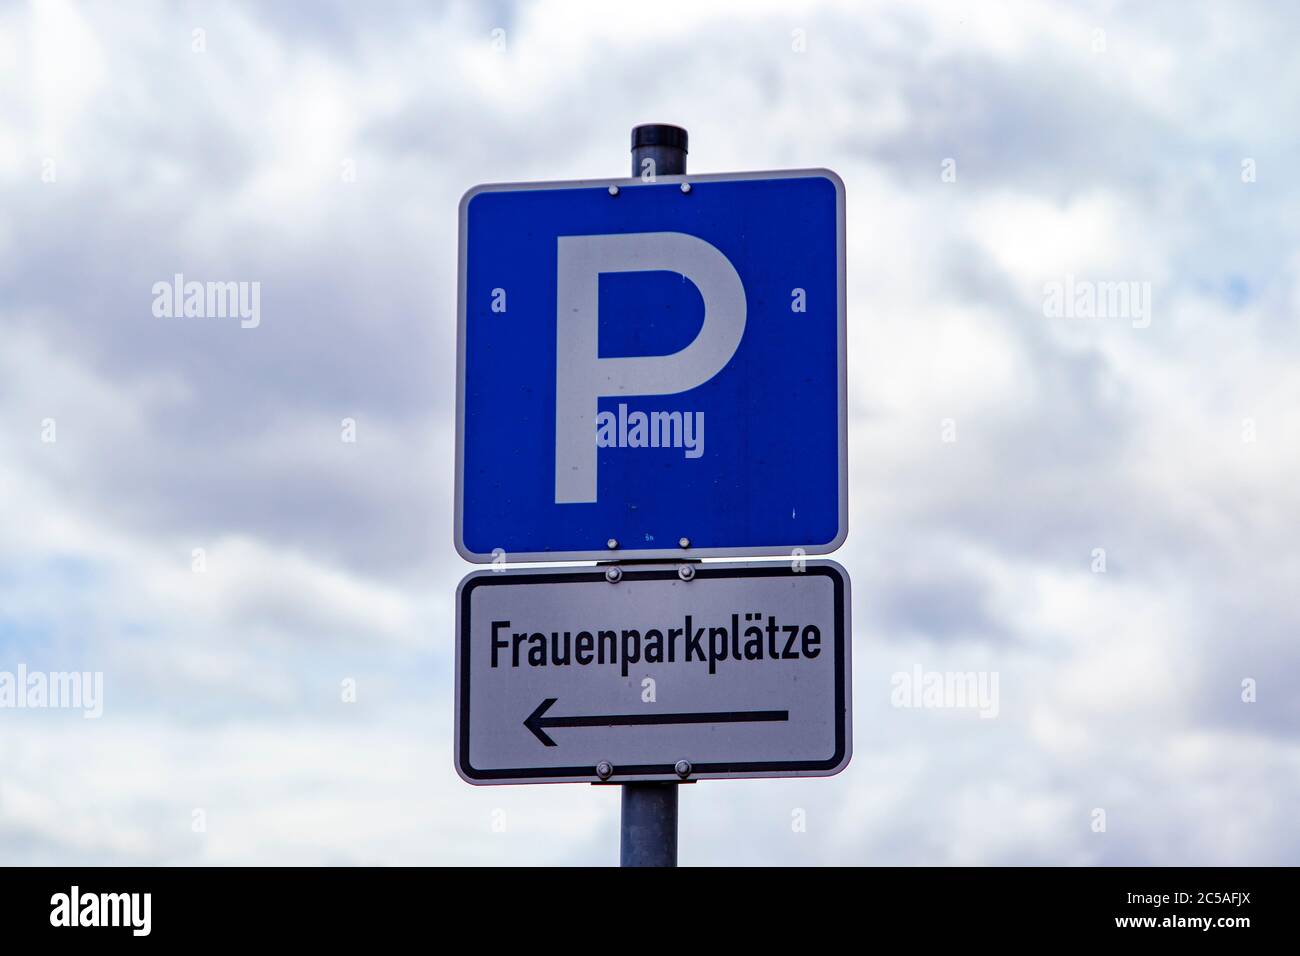 panneau de stationnement allemand, parking pour femmes uniquement, ciel nuageux Banque D'Images